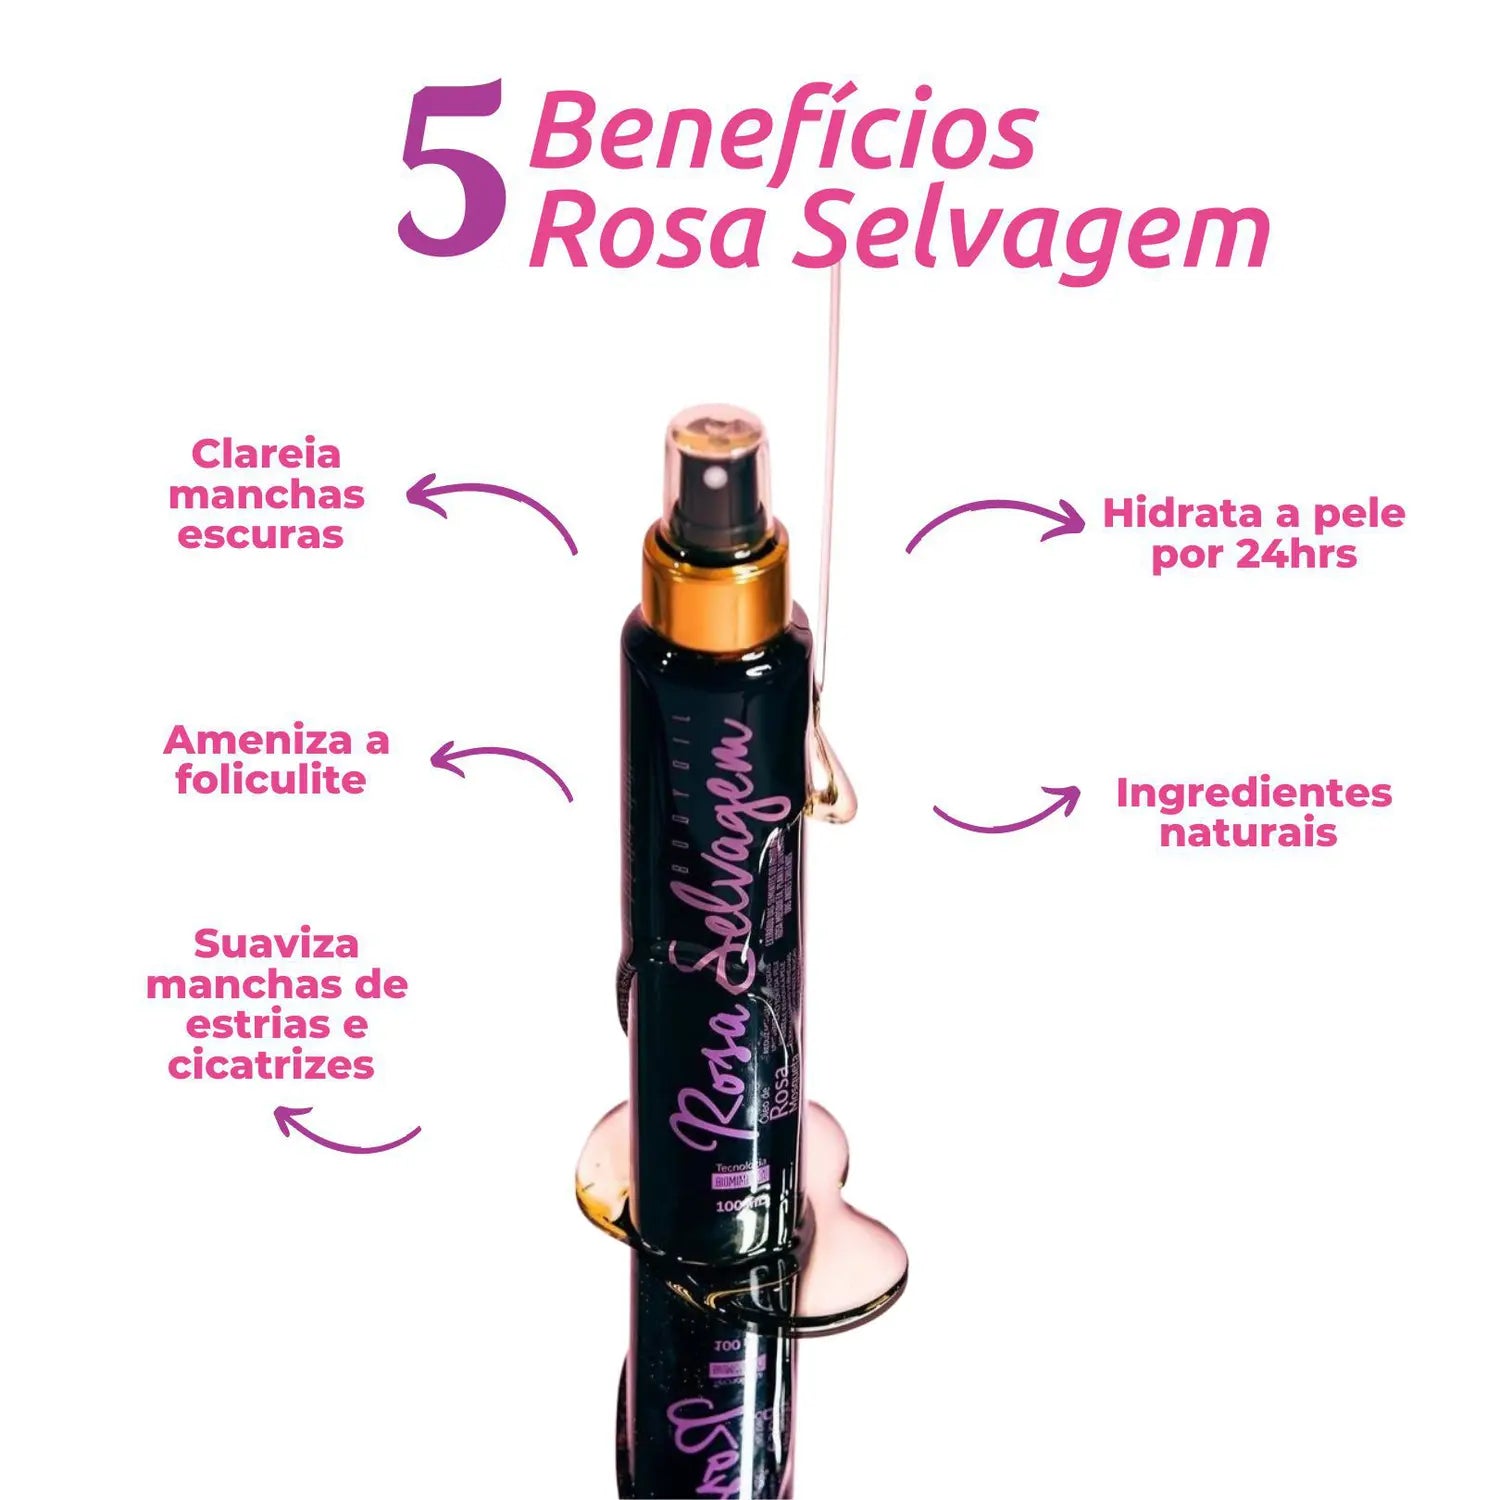 Rosa Selvagem Skin Lightener Against Blemishes and Stretch Marks - 100ml